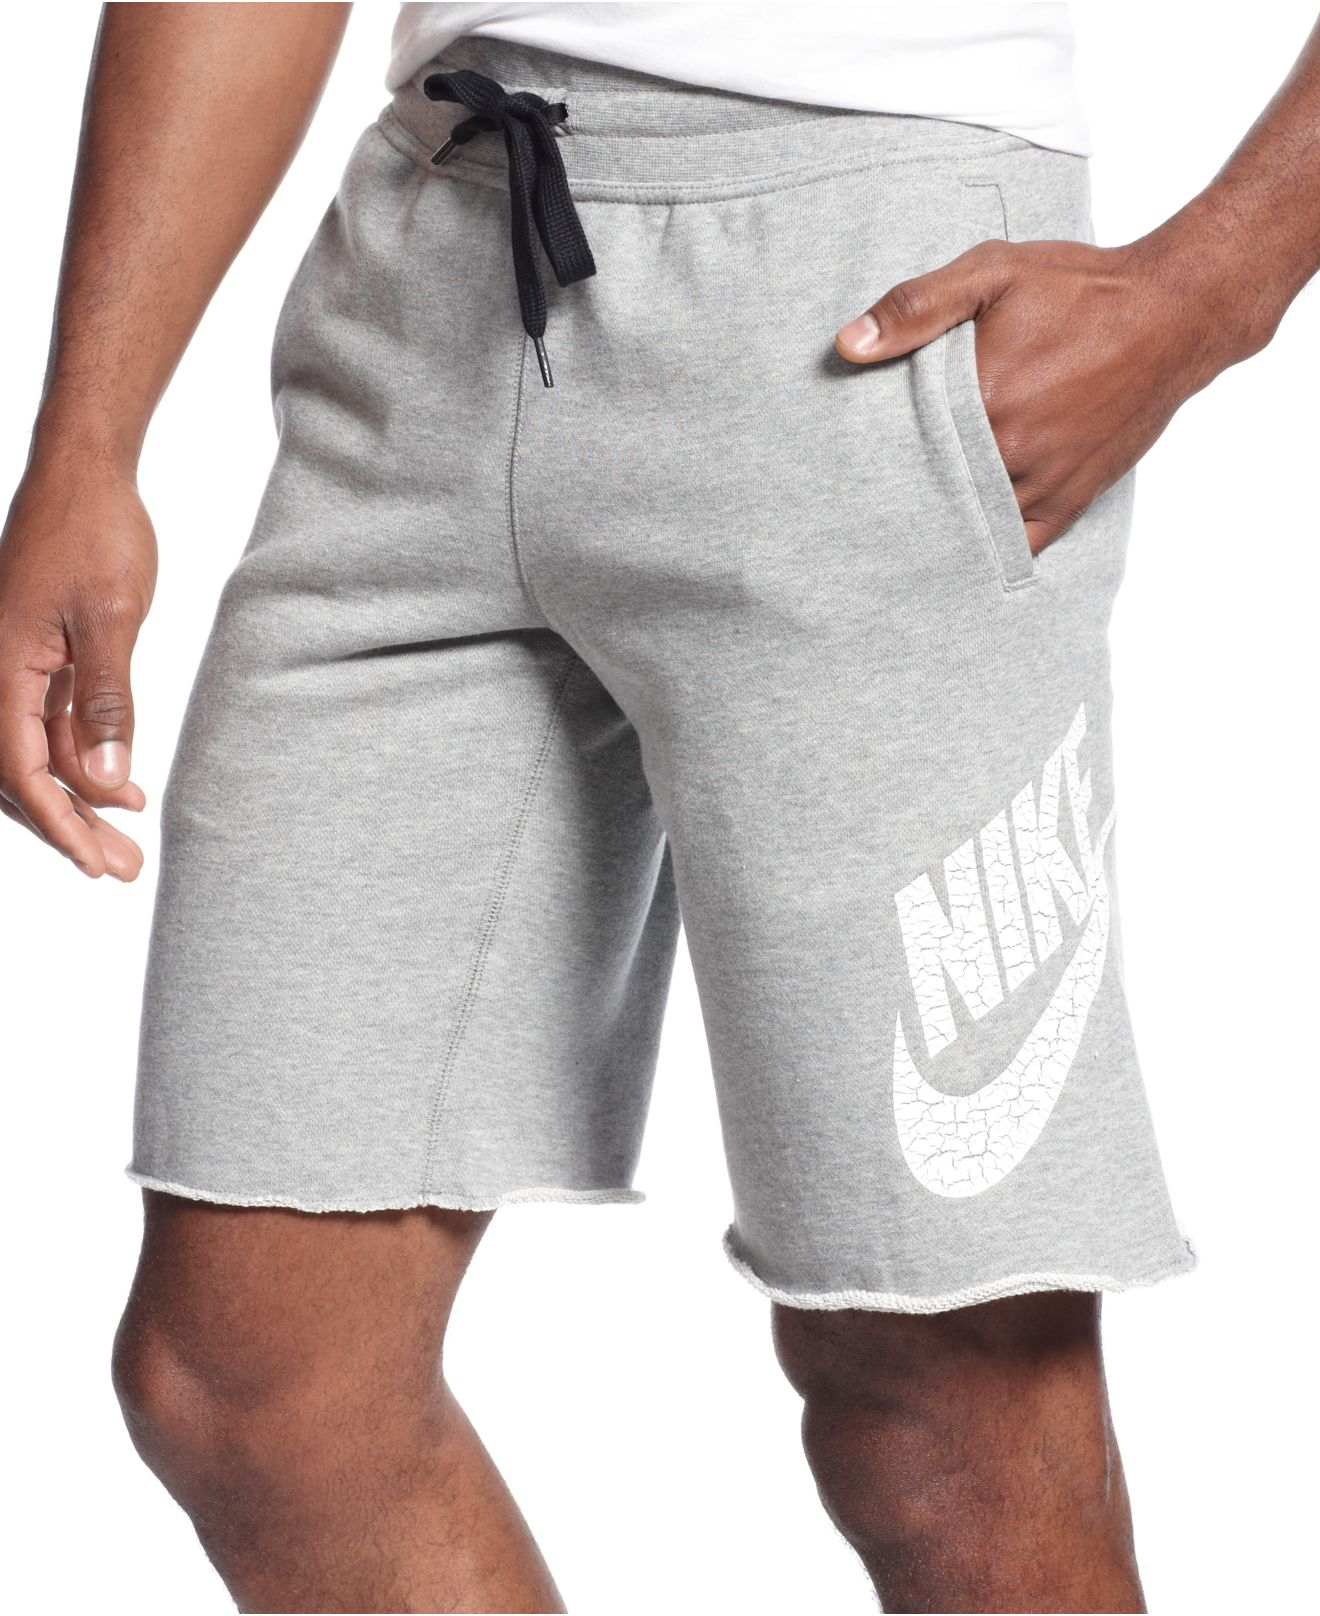 Nike Aw77 Shorts Gray Men |